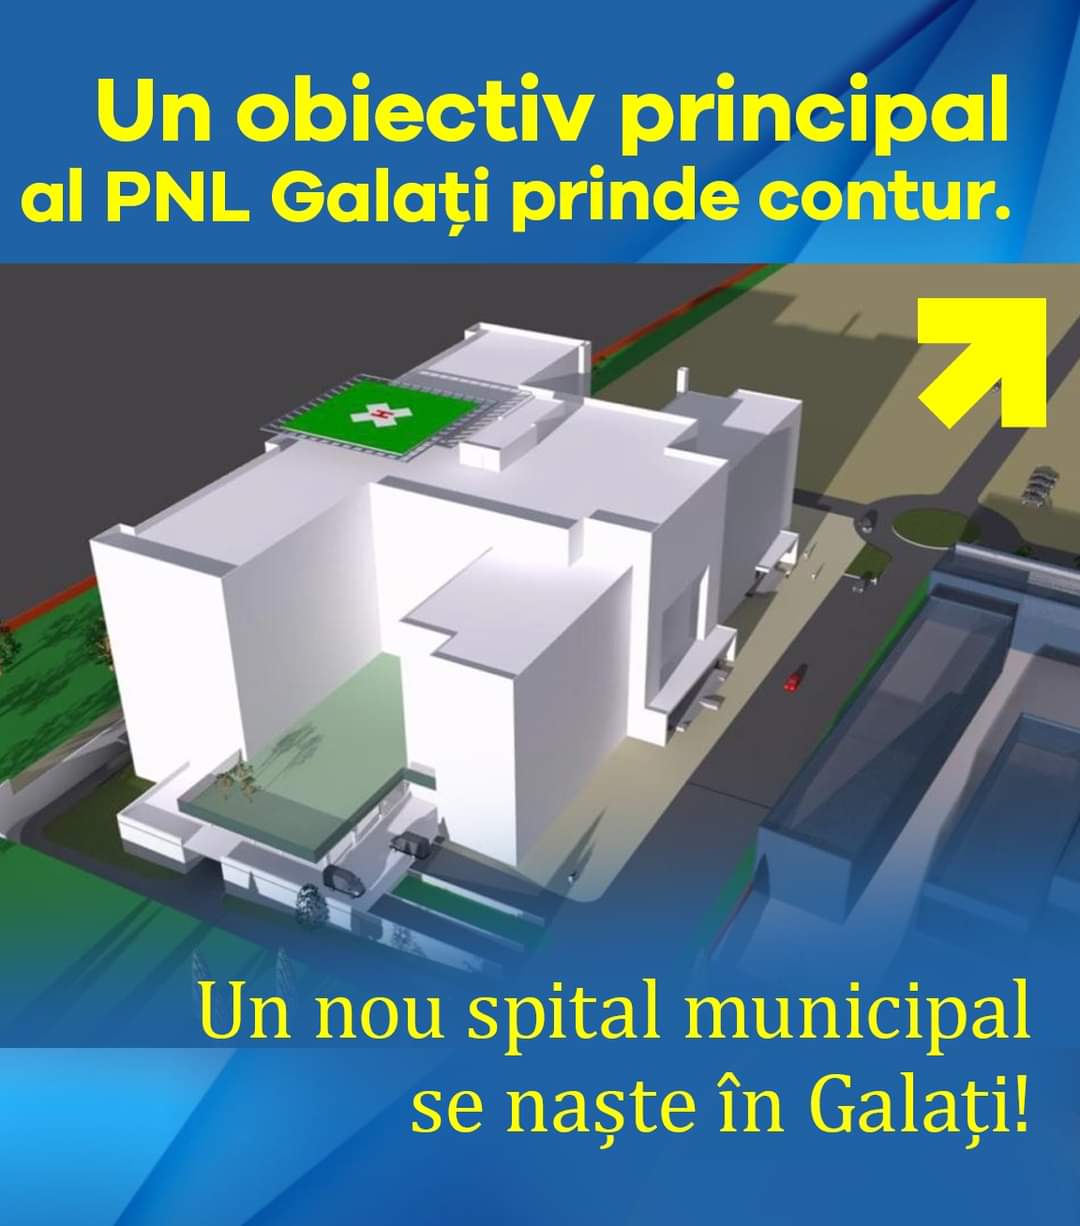 Un obiectiv principal al PNL Galaţi prinde contur: un nou spital municipal se naşte în Galaţi